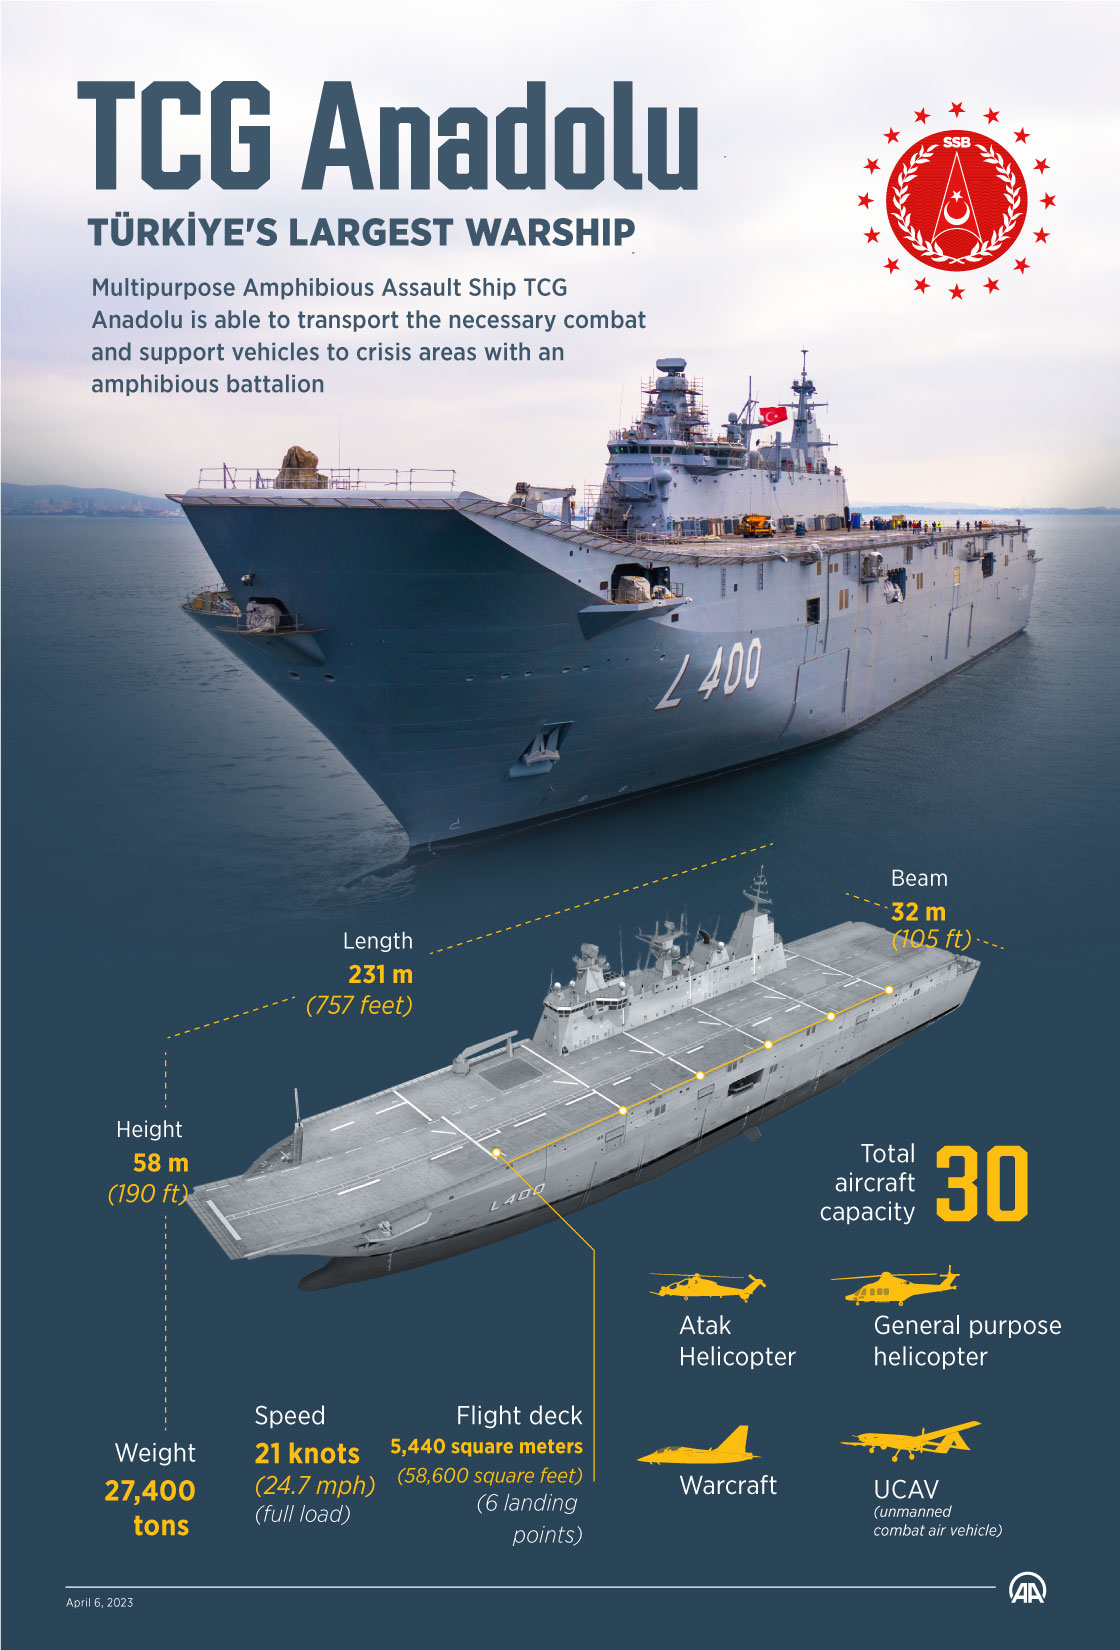 Türkiye's largest warship